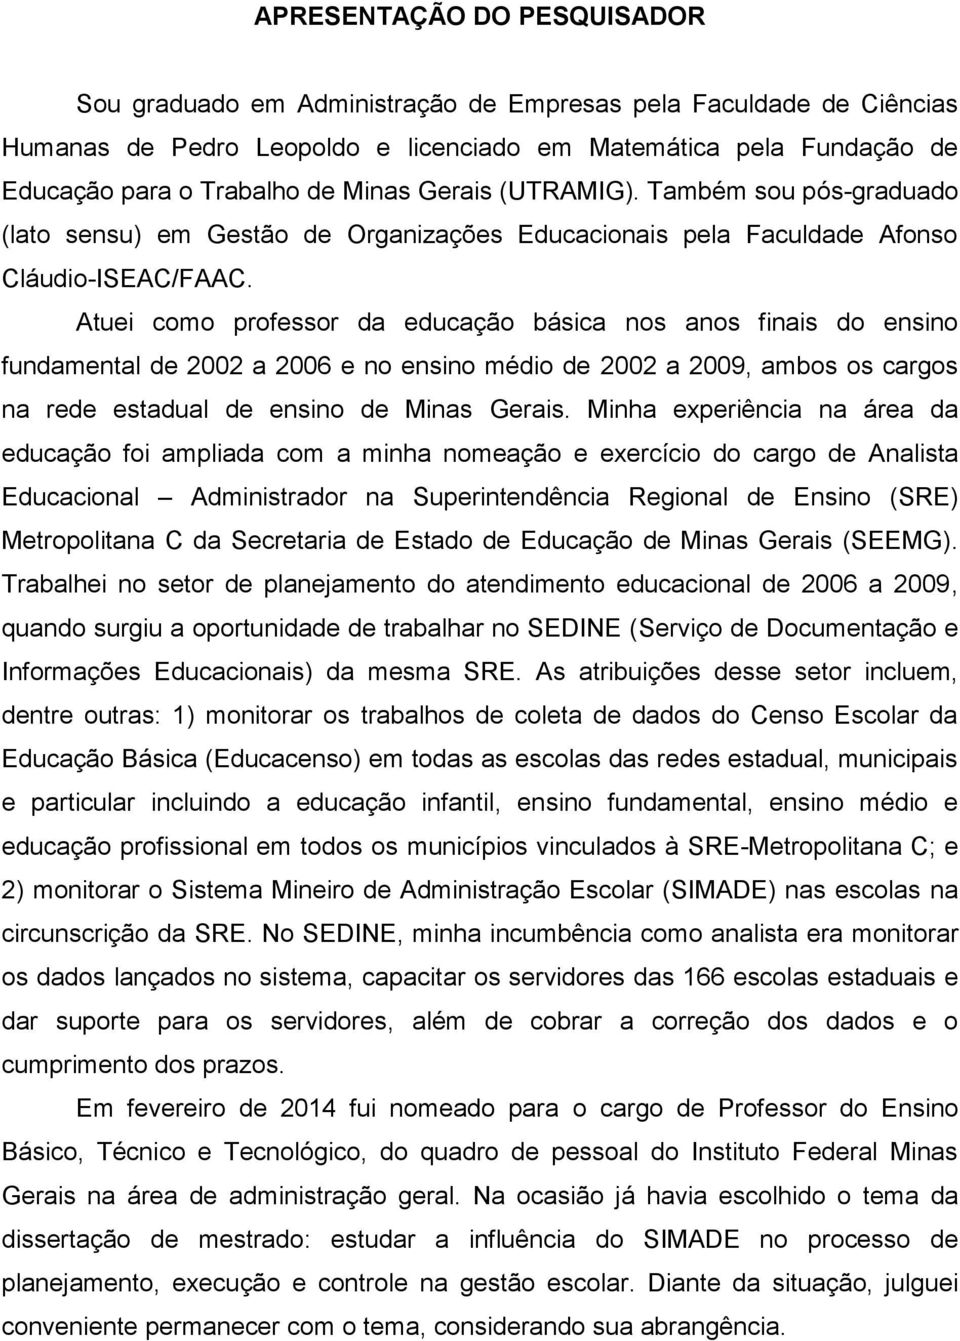 Atuei como professor da educação básica nos anos finais do ensino fundamental de 2002 a 2006 e no ensino médio de 2002 a 2009, ambos os cargos na rede estadual de ensino de Minas Gerais.